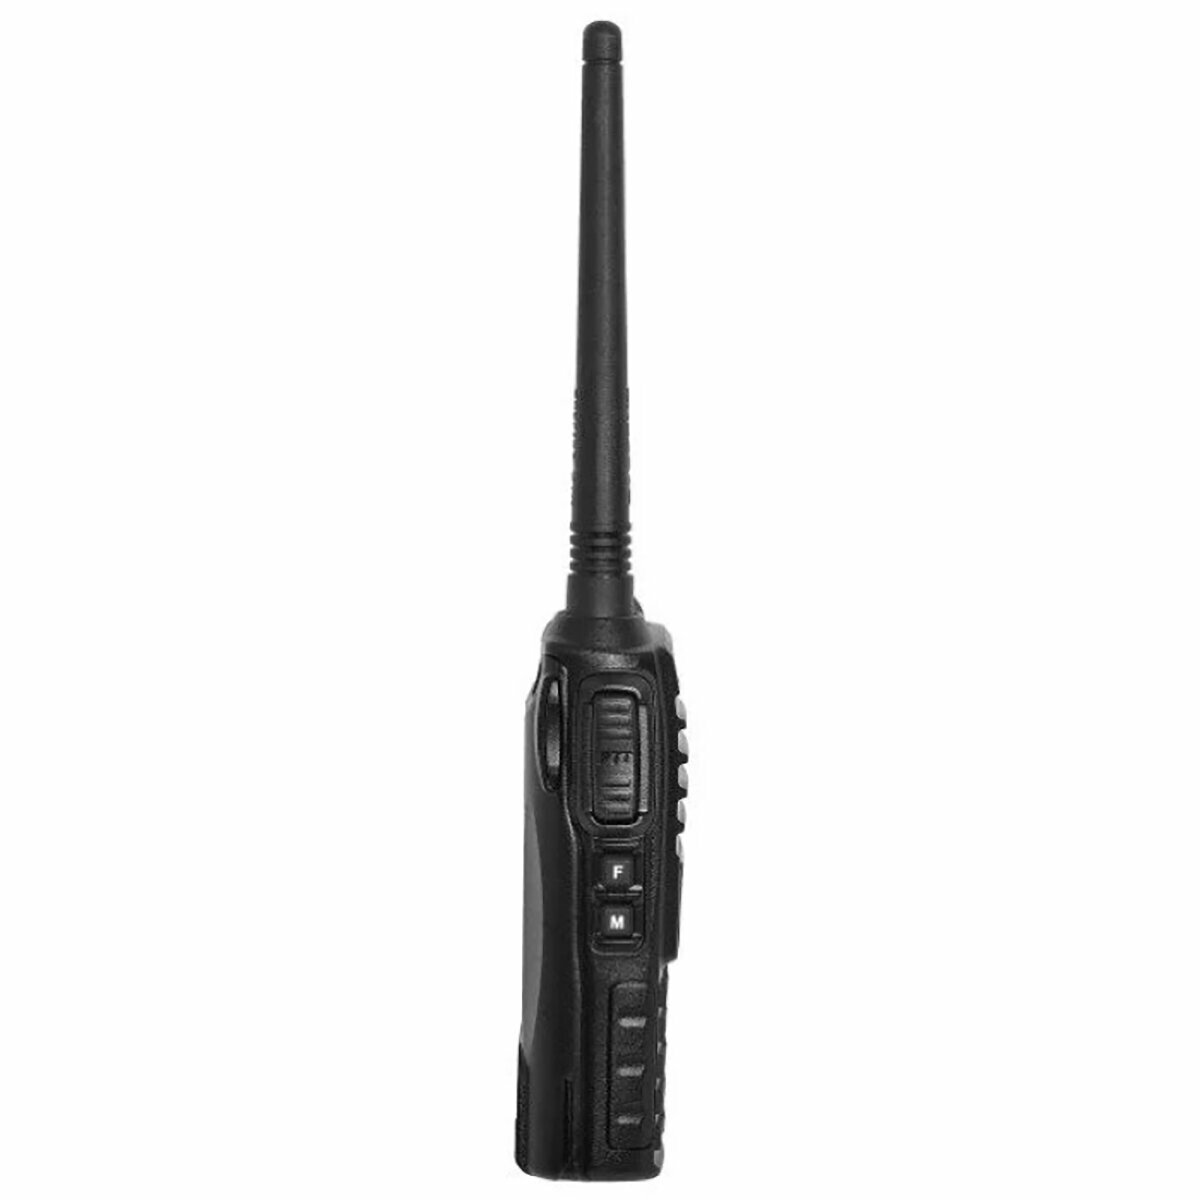 Портативная радиостанция Baofeng UV-82 5 Вт / Черная комплект 10  и радиус до 10 км / UHF; VHF